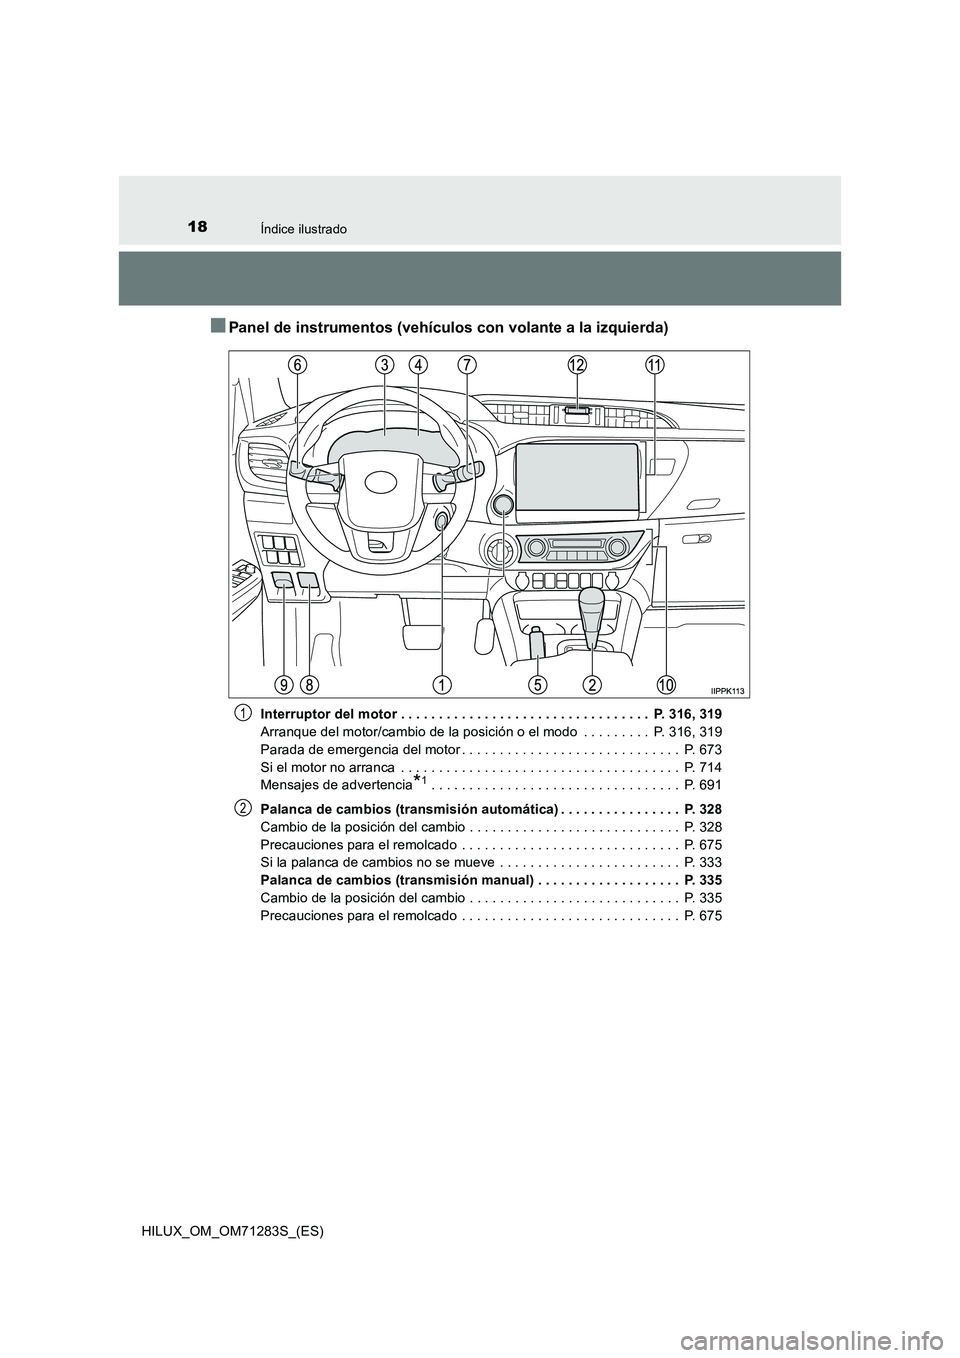 TOYOTA HILUX 2020  Manuale de Empleo (in Spanish) 18Índice ilustrado
HILUX_OM_OM71283S_(ES)
■Panel de instrumentos (vehículos con volante a la izquierda)
Interruptor del motor . . . . . . . . . . . . . . . . . . . . . . . . . . . . . . . . .  P. 